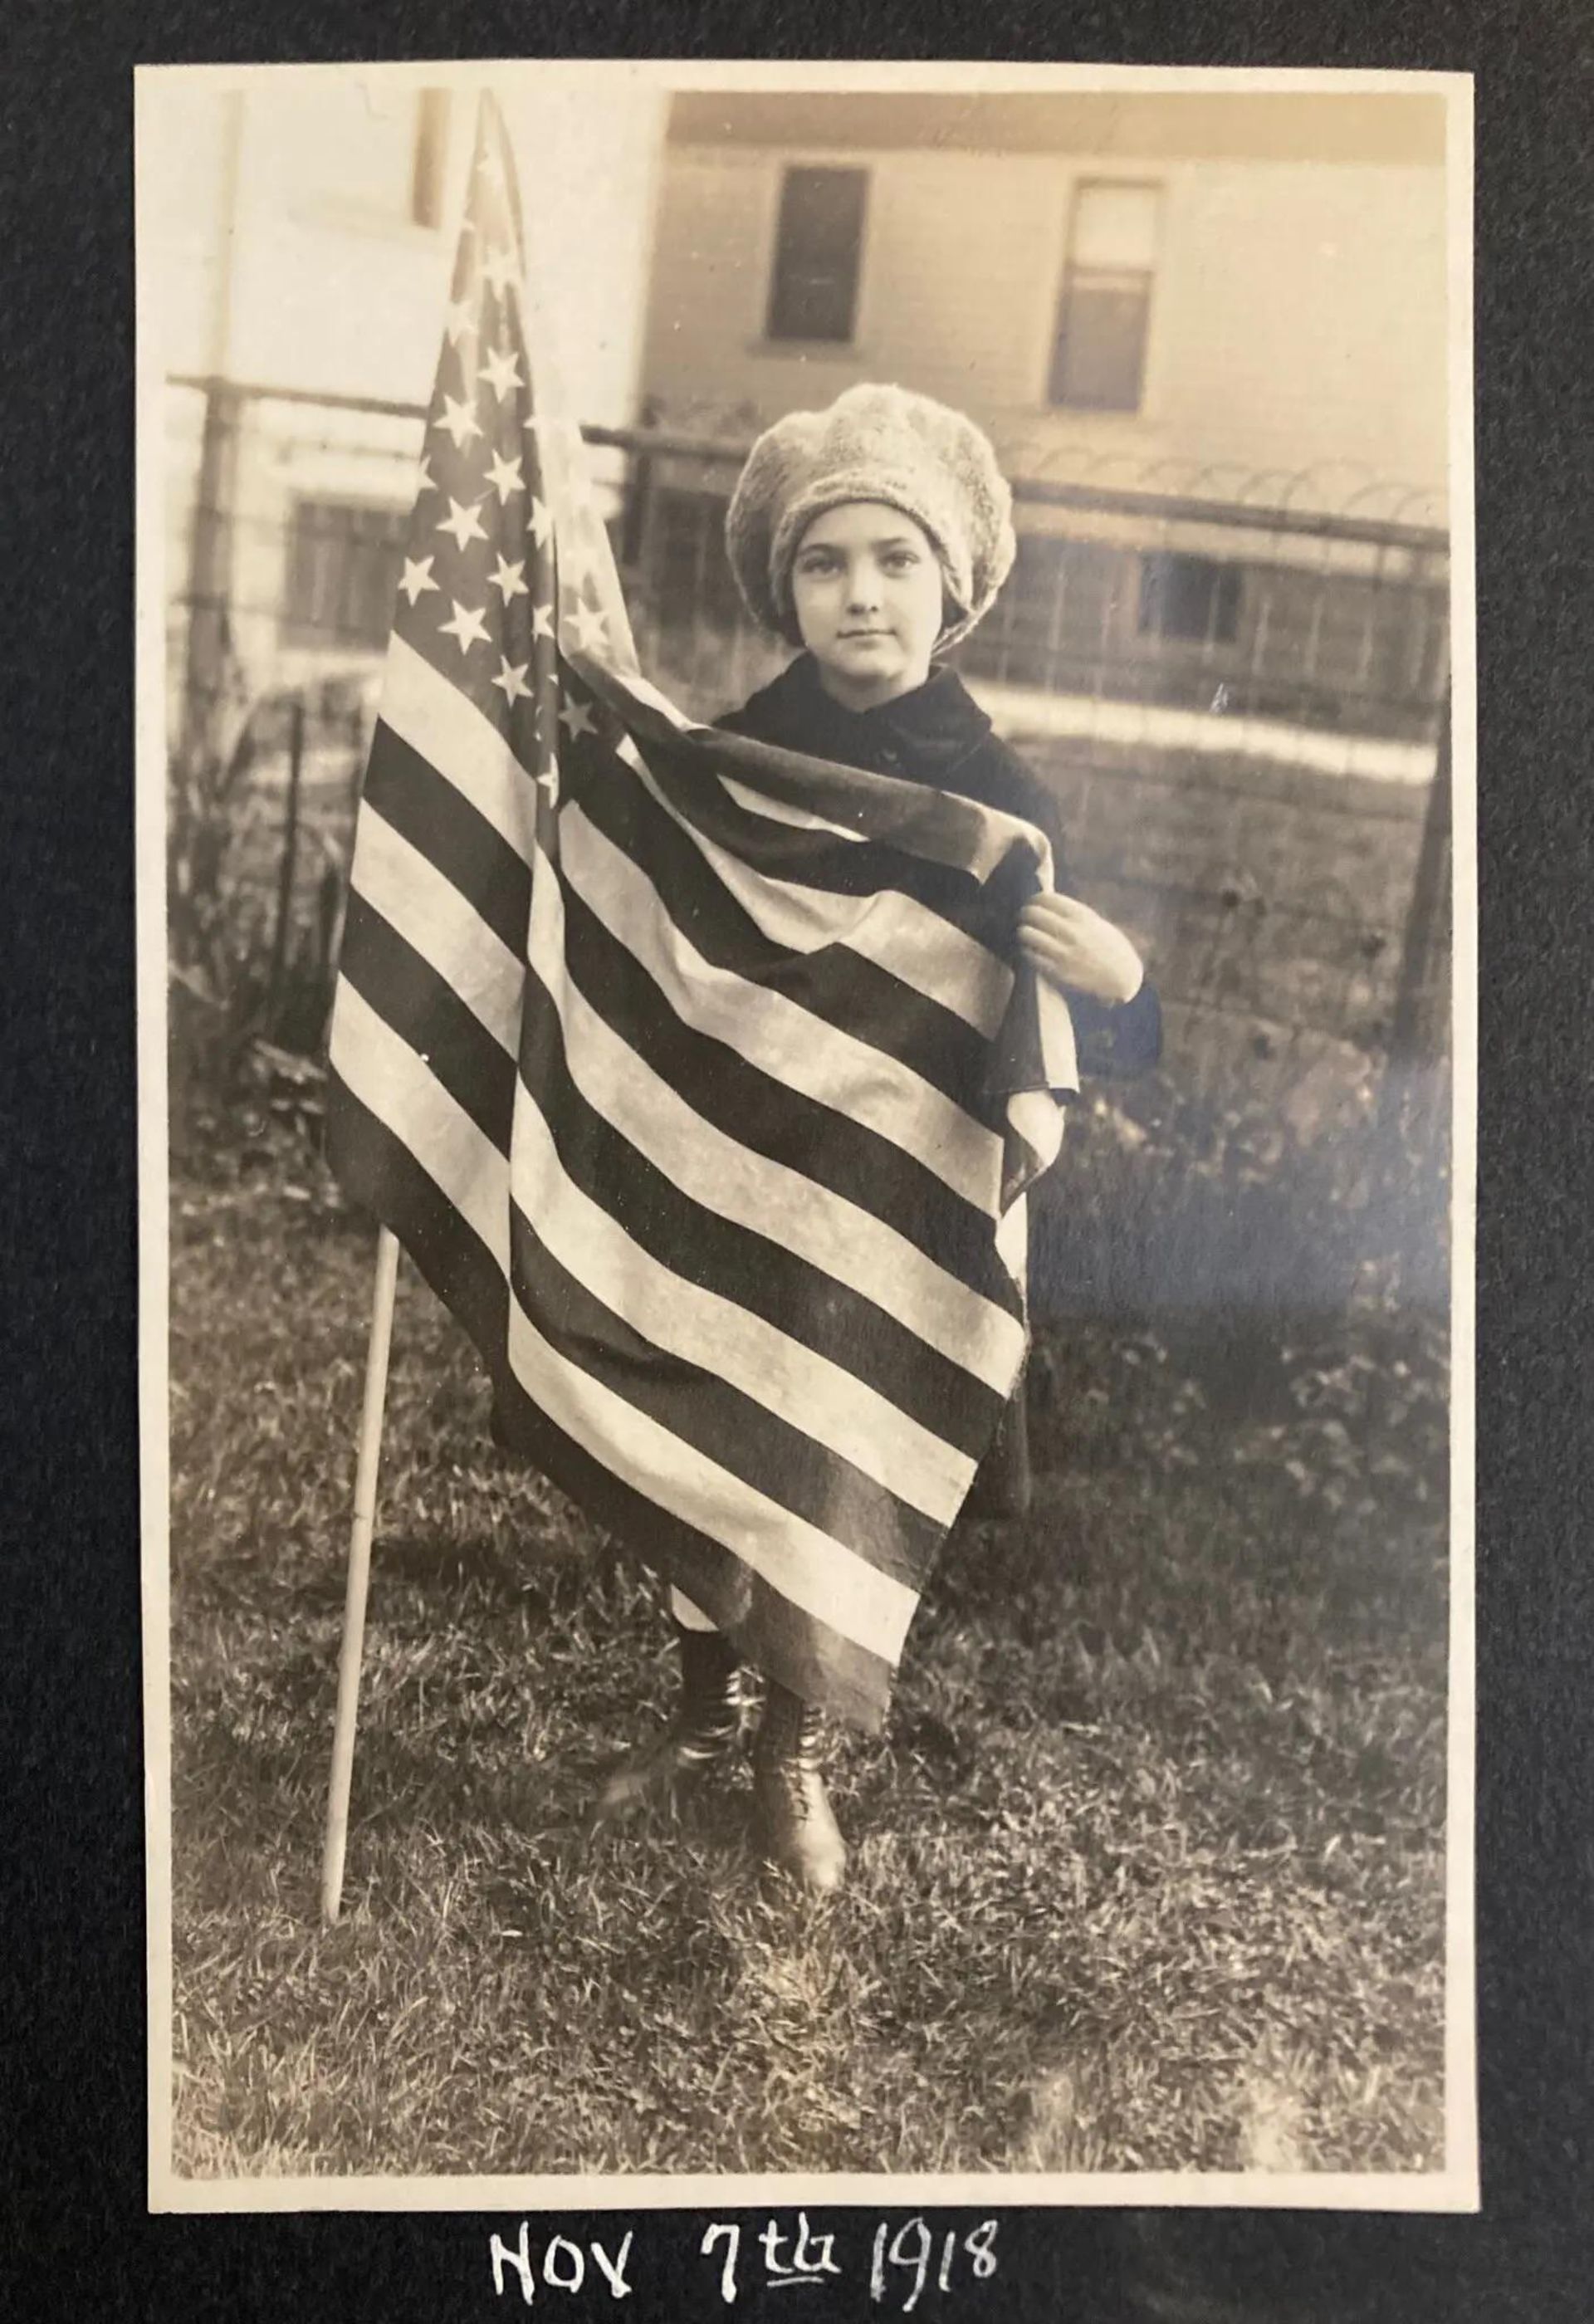 لوئیز لوی در سال ۱۹۱۸ در کنار پرچم آمریکا